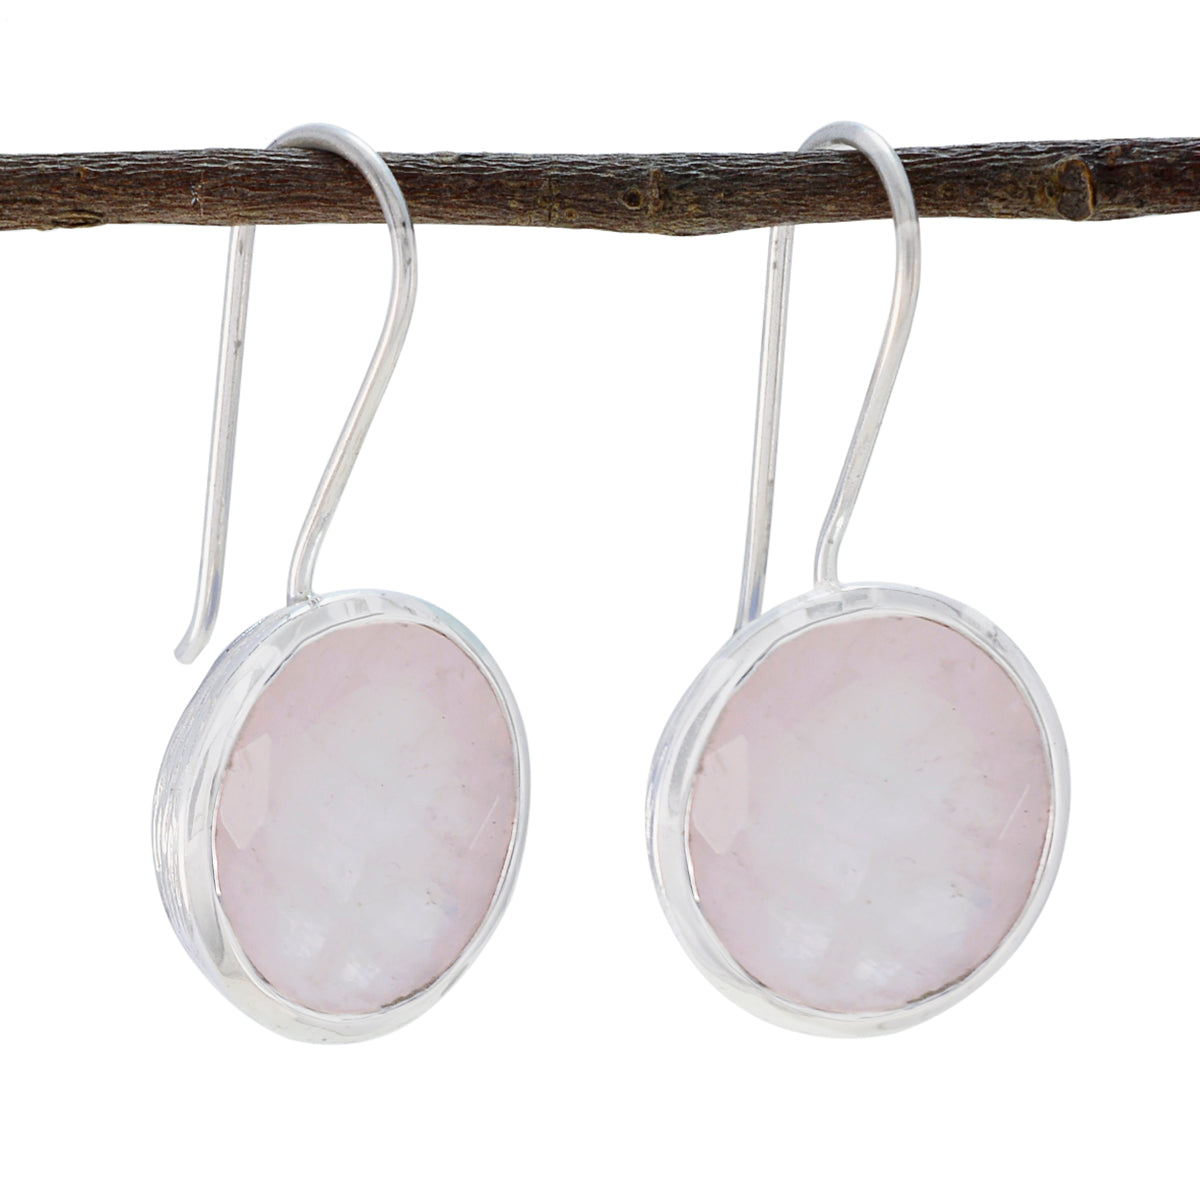 Riyo élégant boucle d'oreille en argent sterling pour demoiselle rose quartz boucle d'oreille lunette réglage rose boucle d'oreille balancent boucle d'oreille